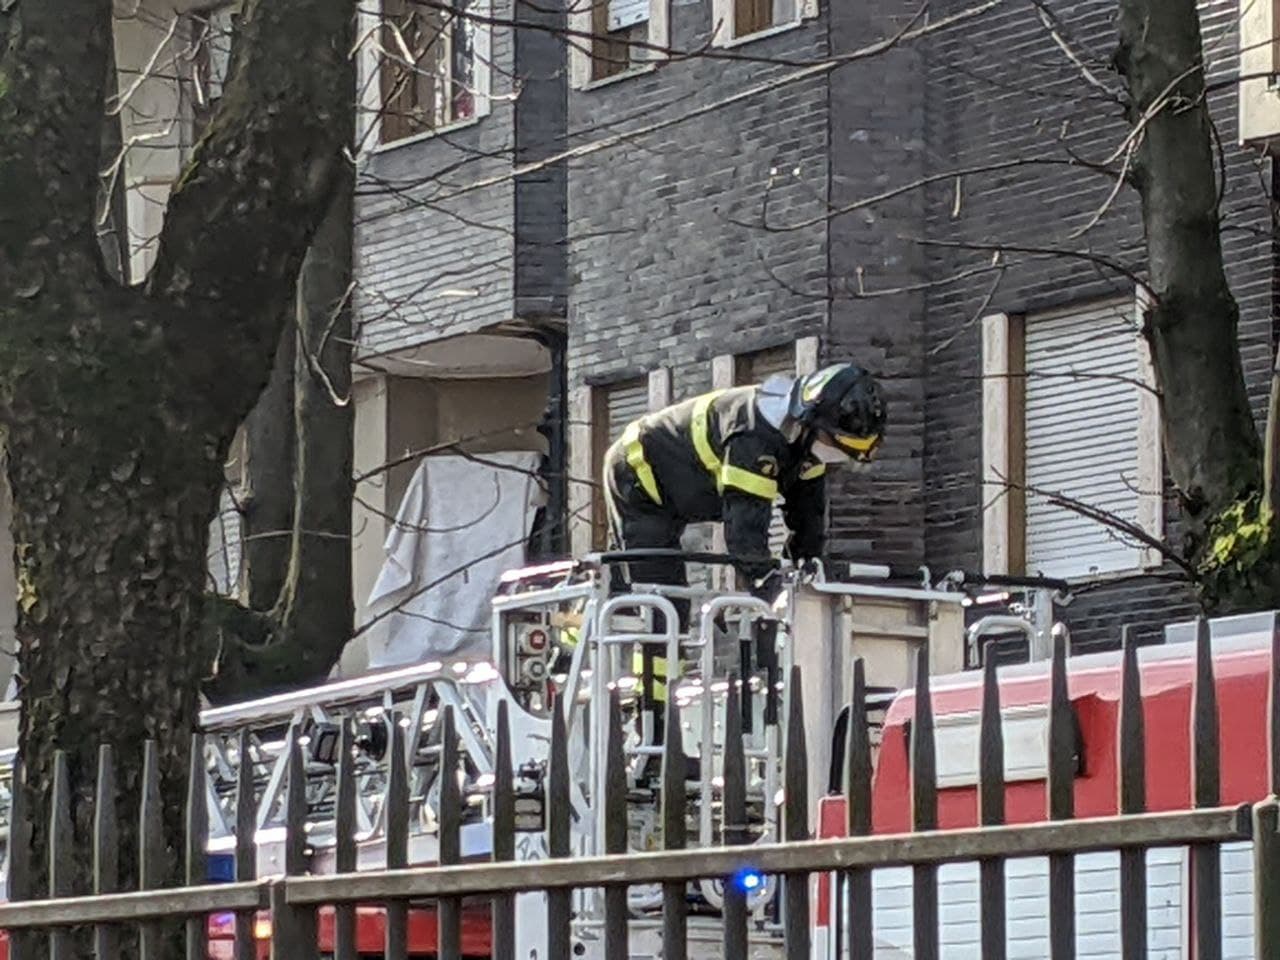 Bloccata sul balcone, saronnese “liberata” dai pompieri (che hanno anche evitato un incendio)